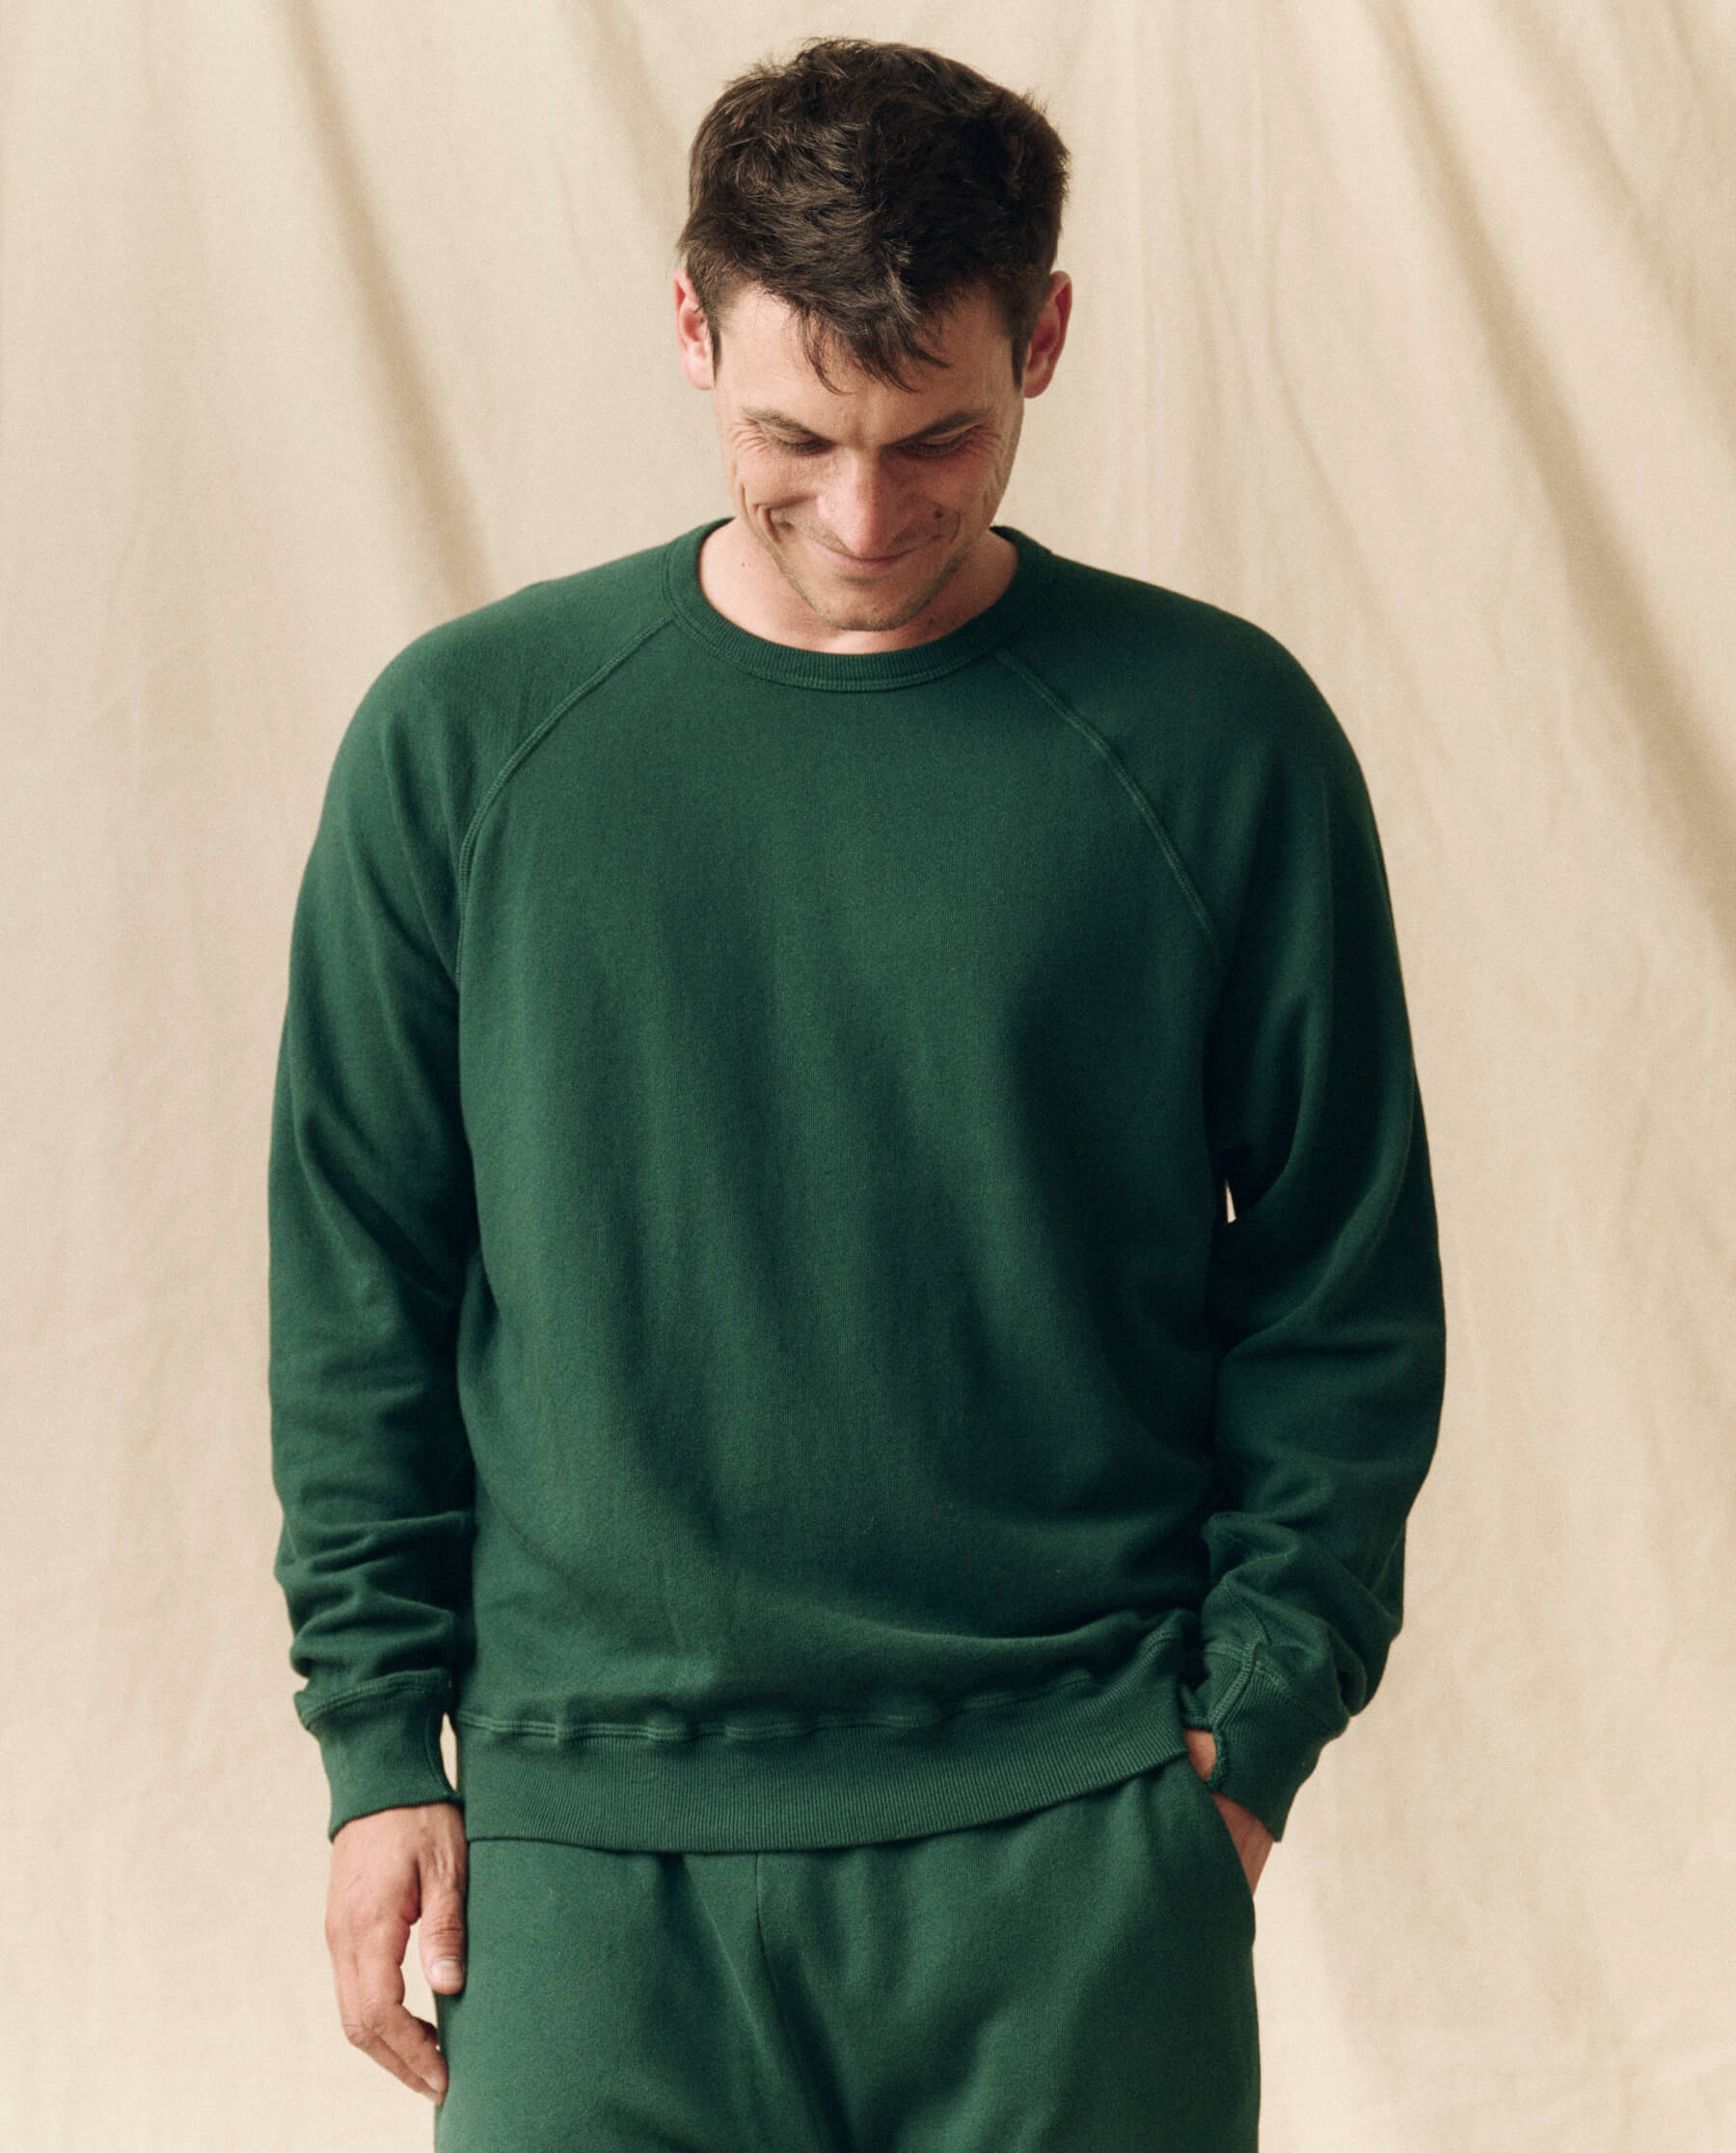 The Men's College Sweatshirt. -- Green Grove